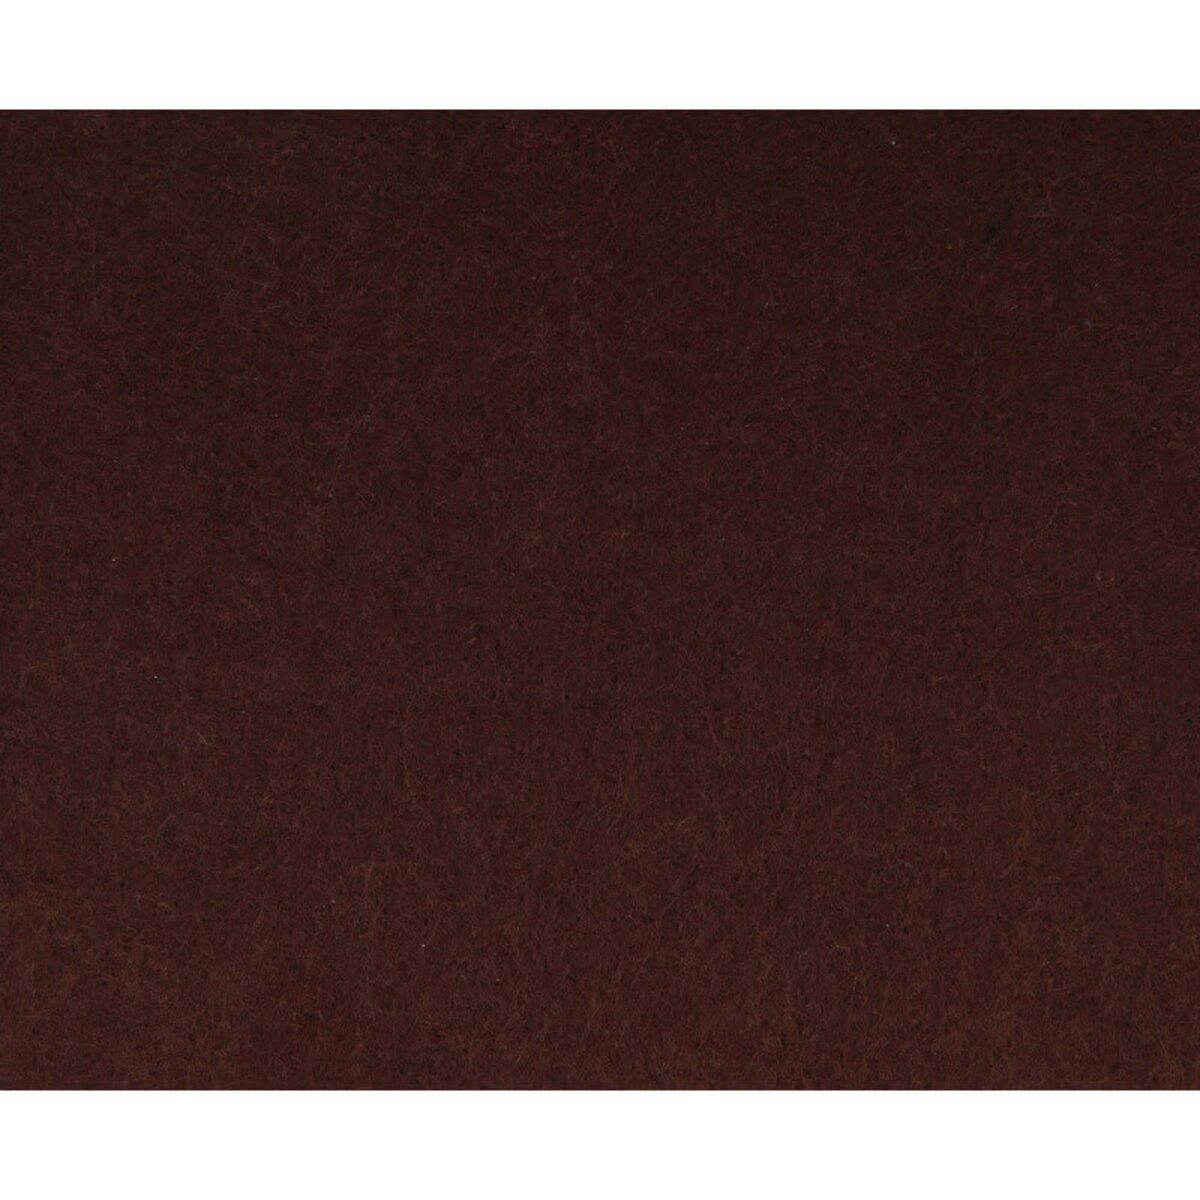 Artémio Feutrine couleur choco 30,5 x 30,5 cm